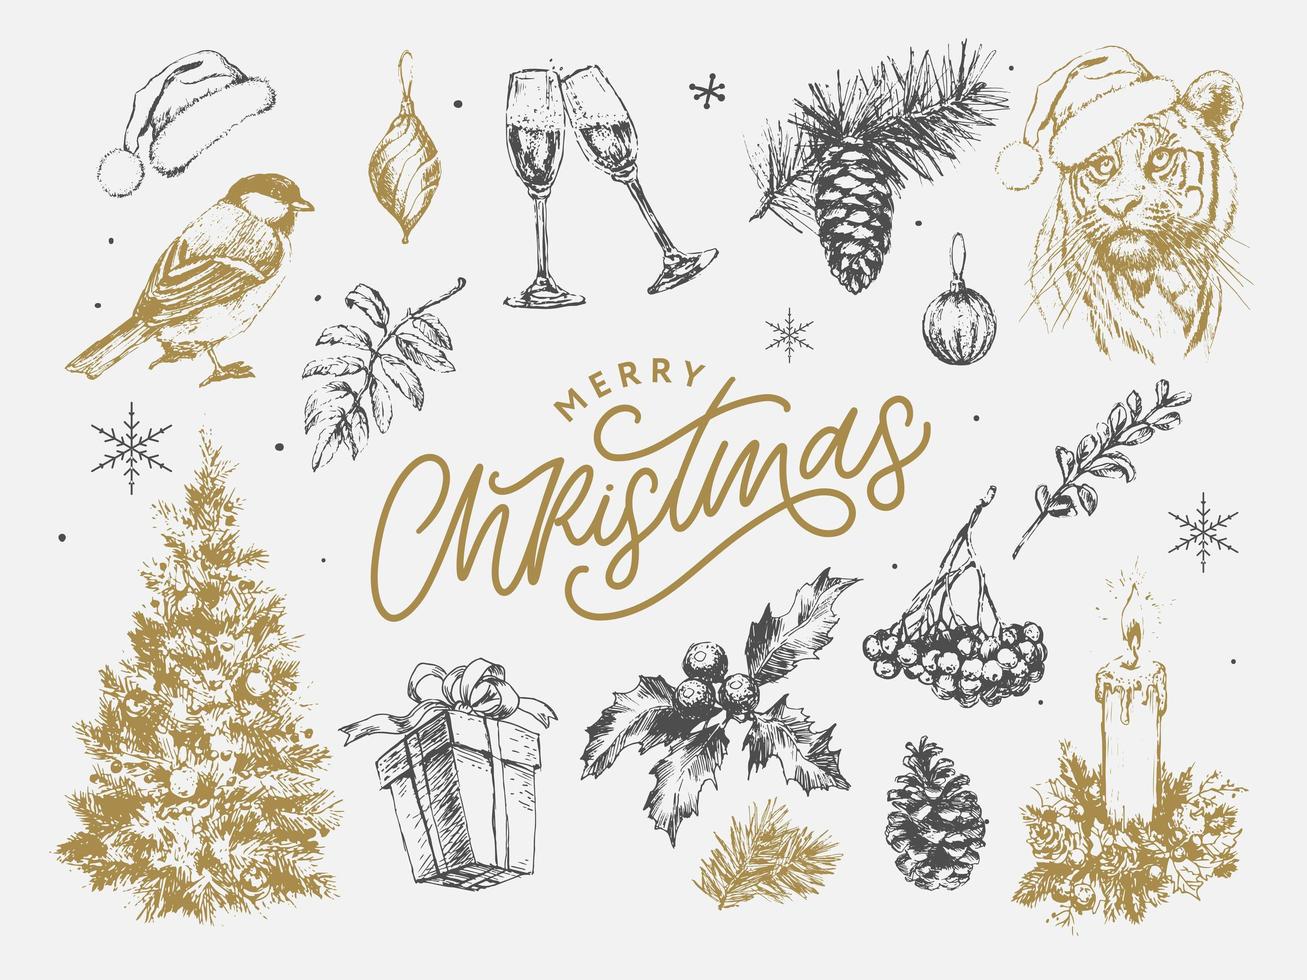 conjunto de navidad 2022 año nuevo y símbolos navideños, árbol de navidad, tigre, santa, cono, canela, vasos, velas, juguetes, regalos, ilustraciones de boceto. vector